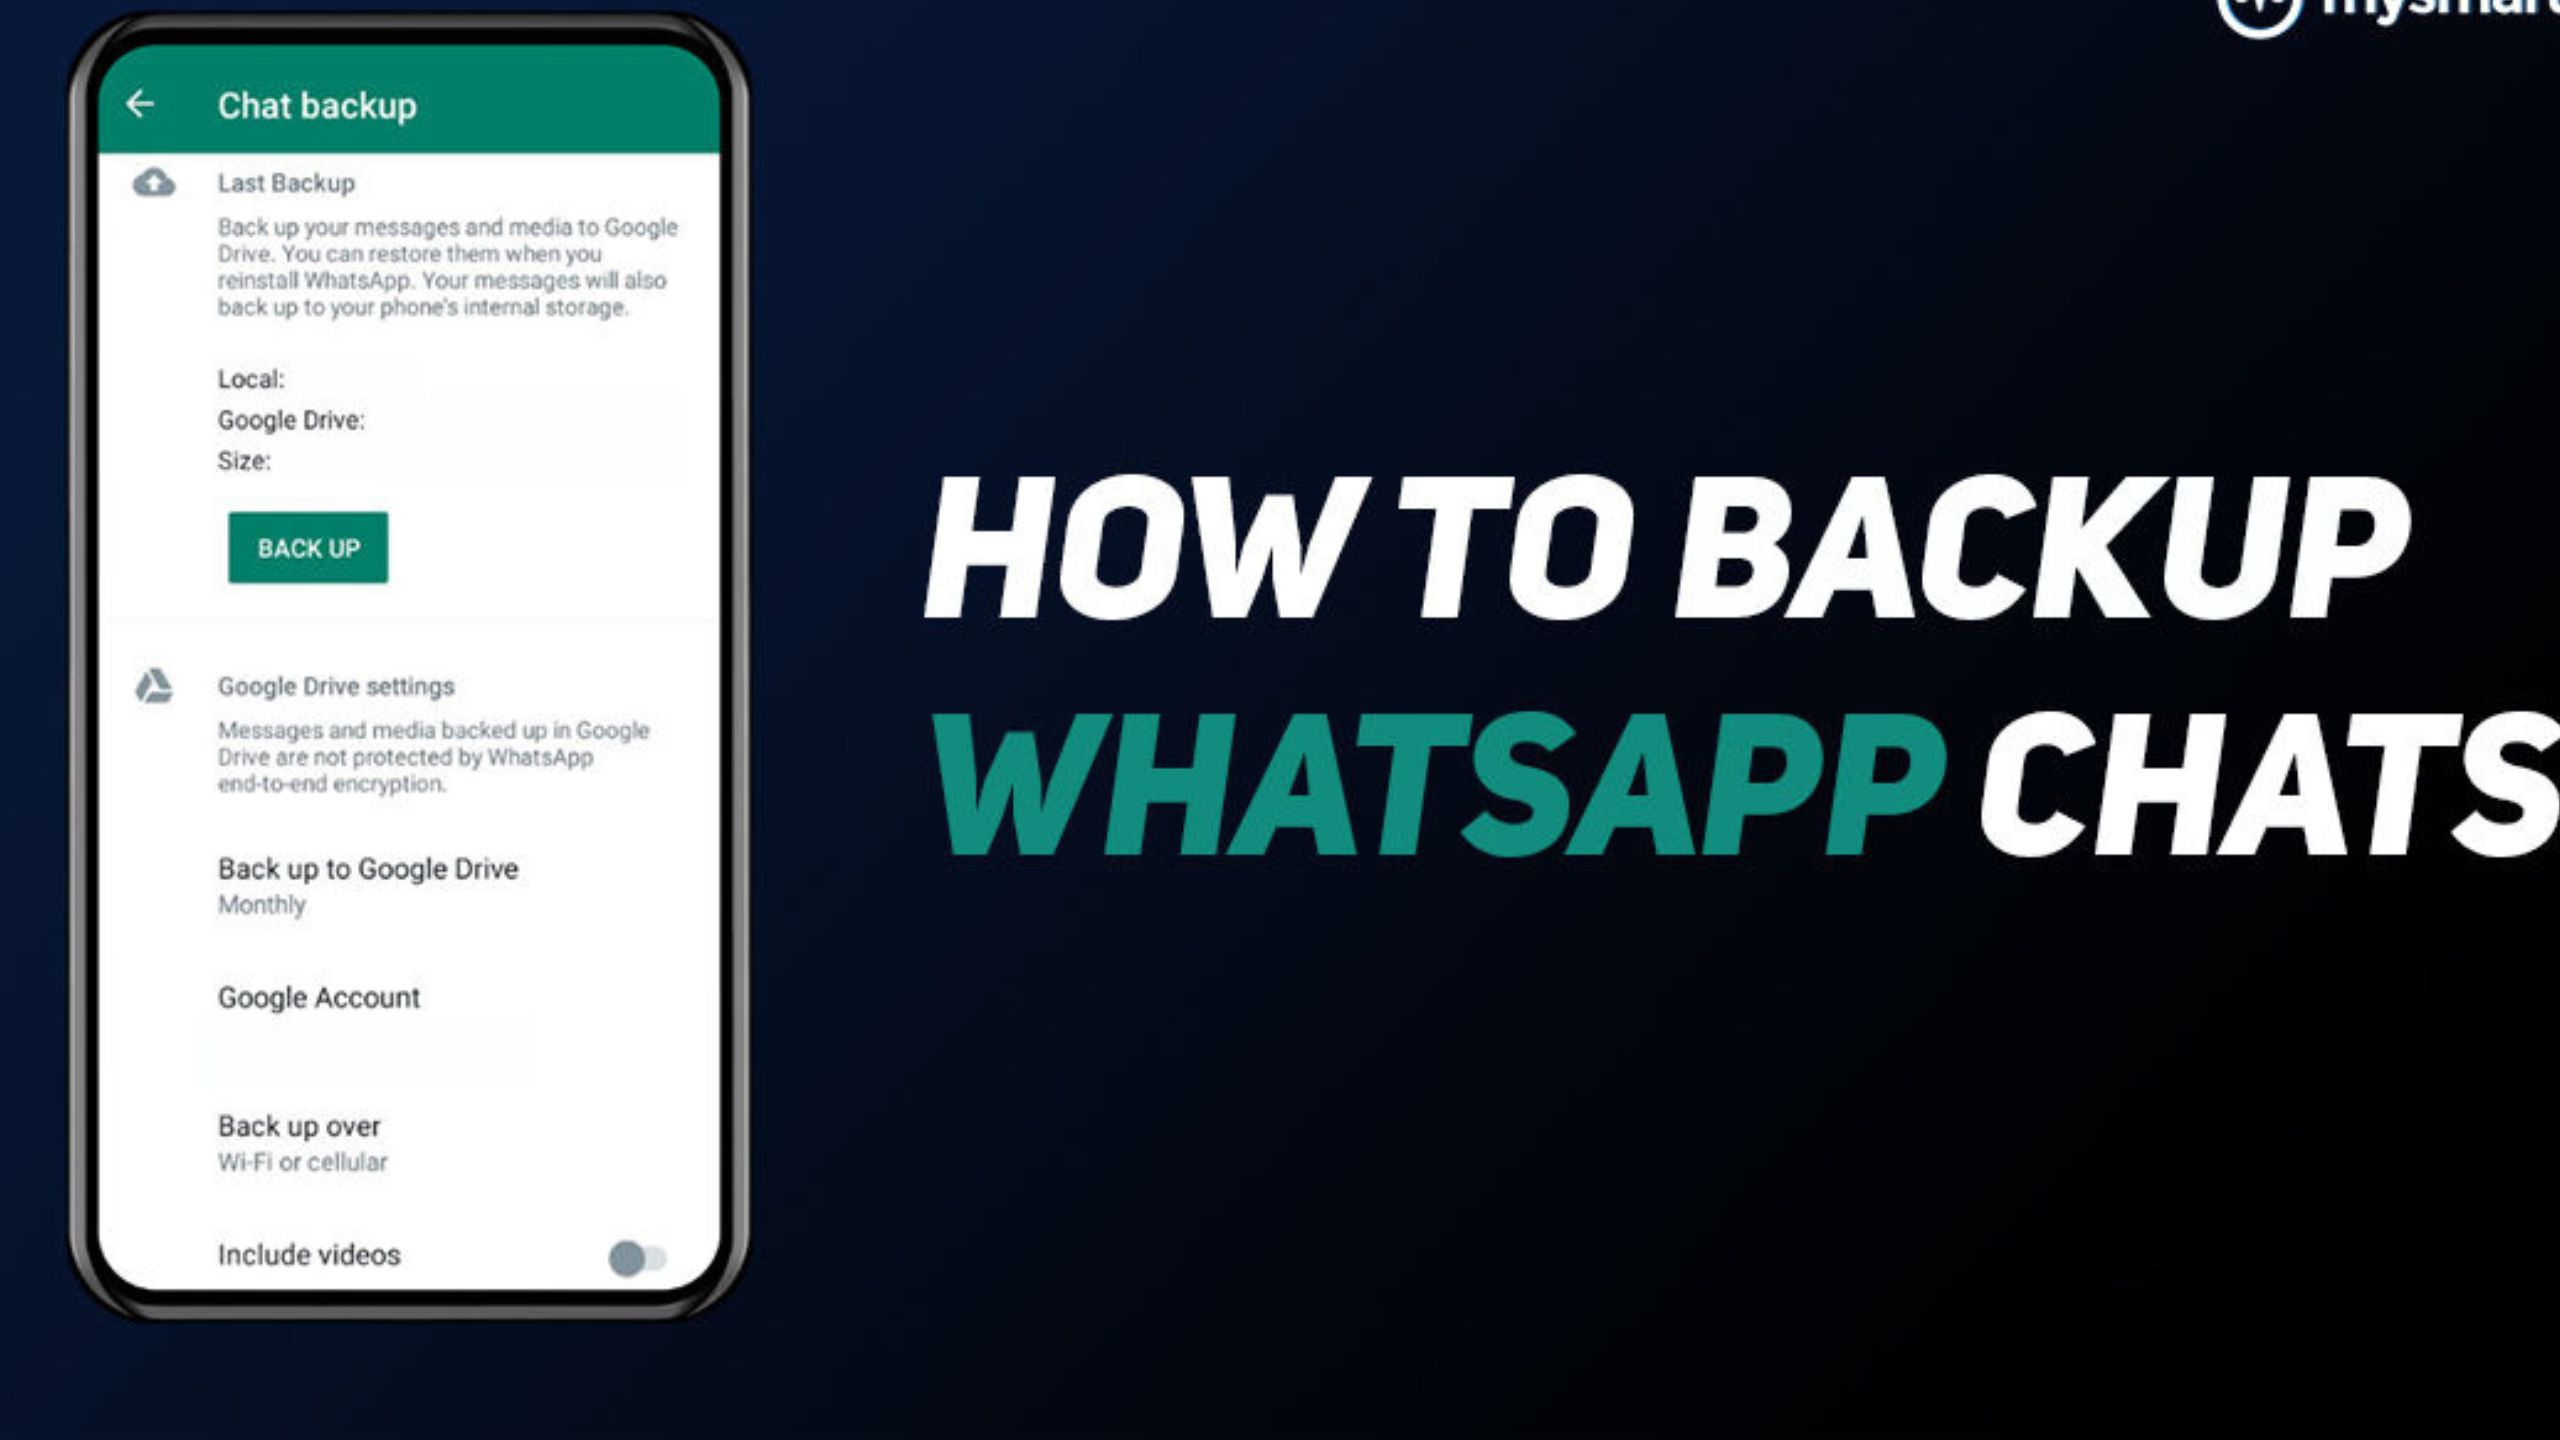 WhatsApp Umumkan Perubahan: Backup Data Tidak Lagi Gratis untuk Pengguna Android